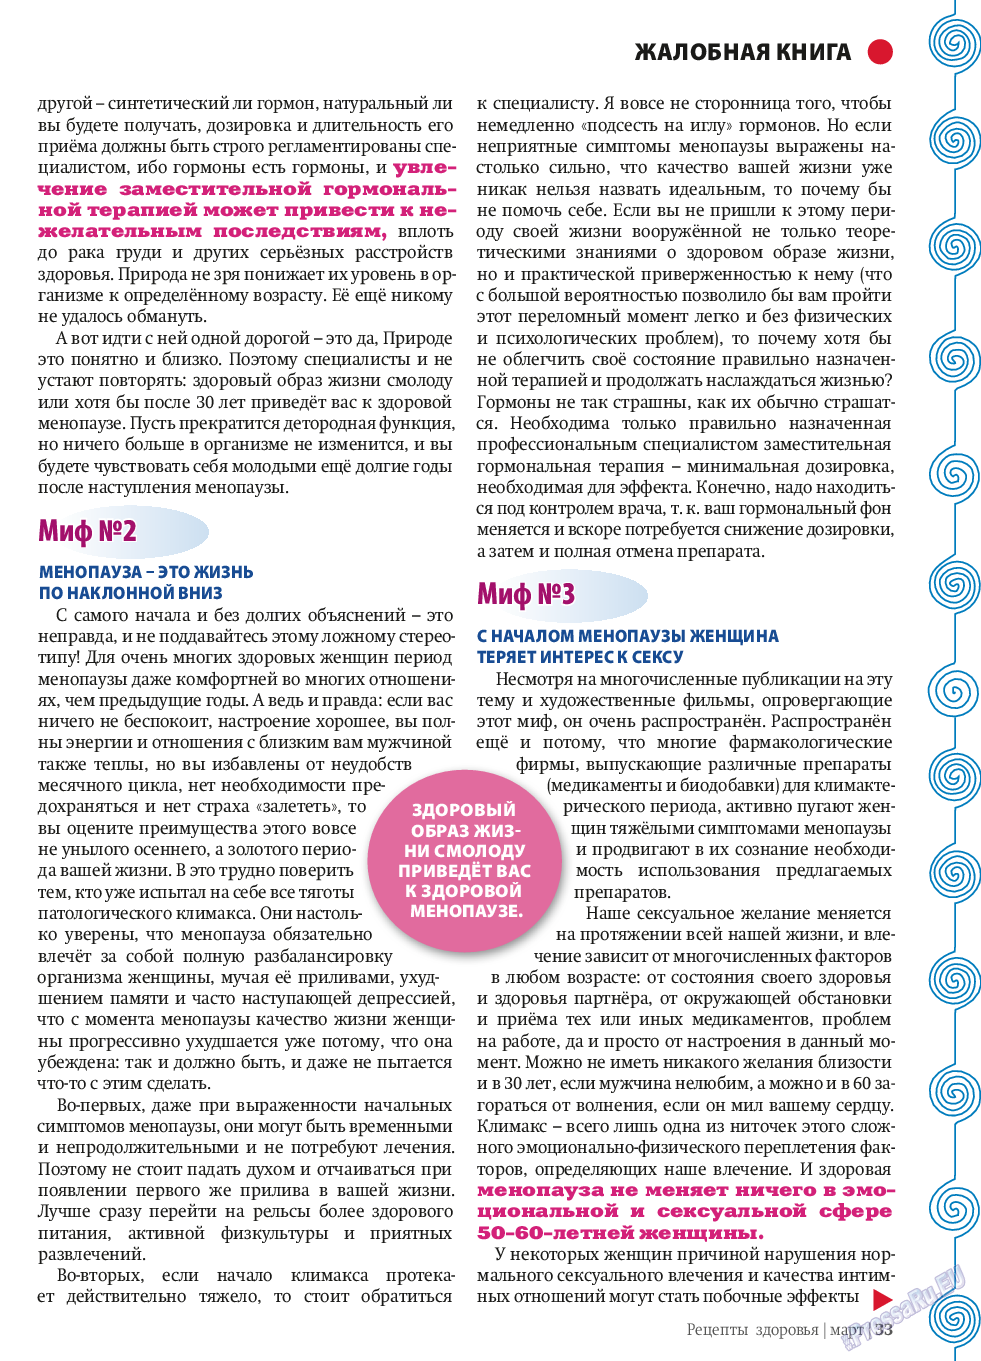 Рецепты здоровья (журнал). 2014 год, номер 58, стр. 33